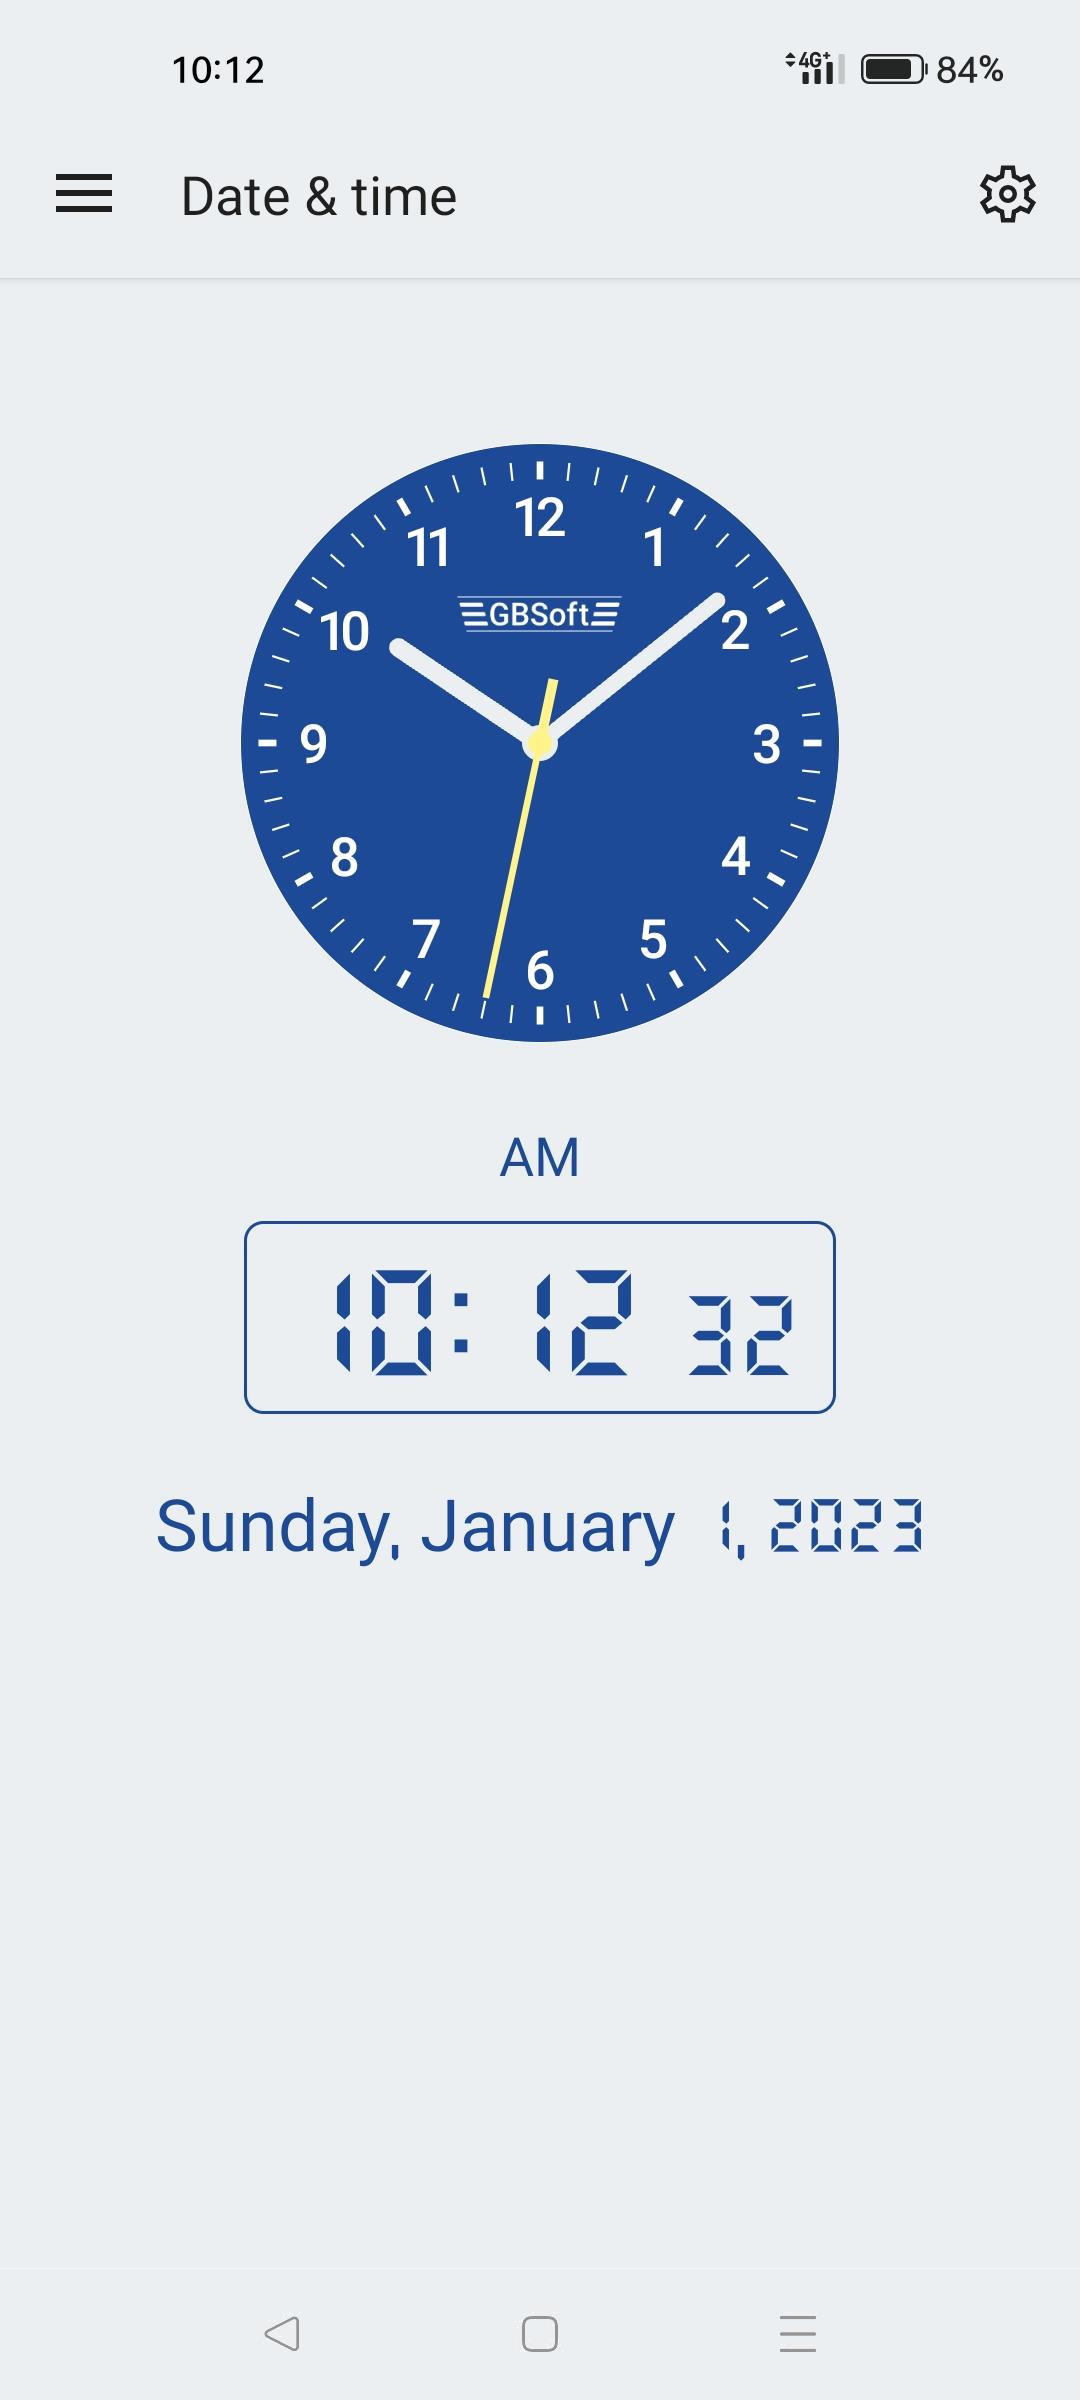 Date & time calculator Screenshot 1